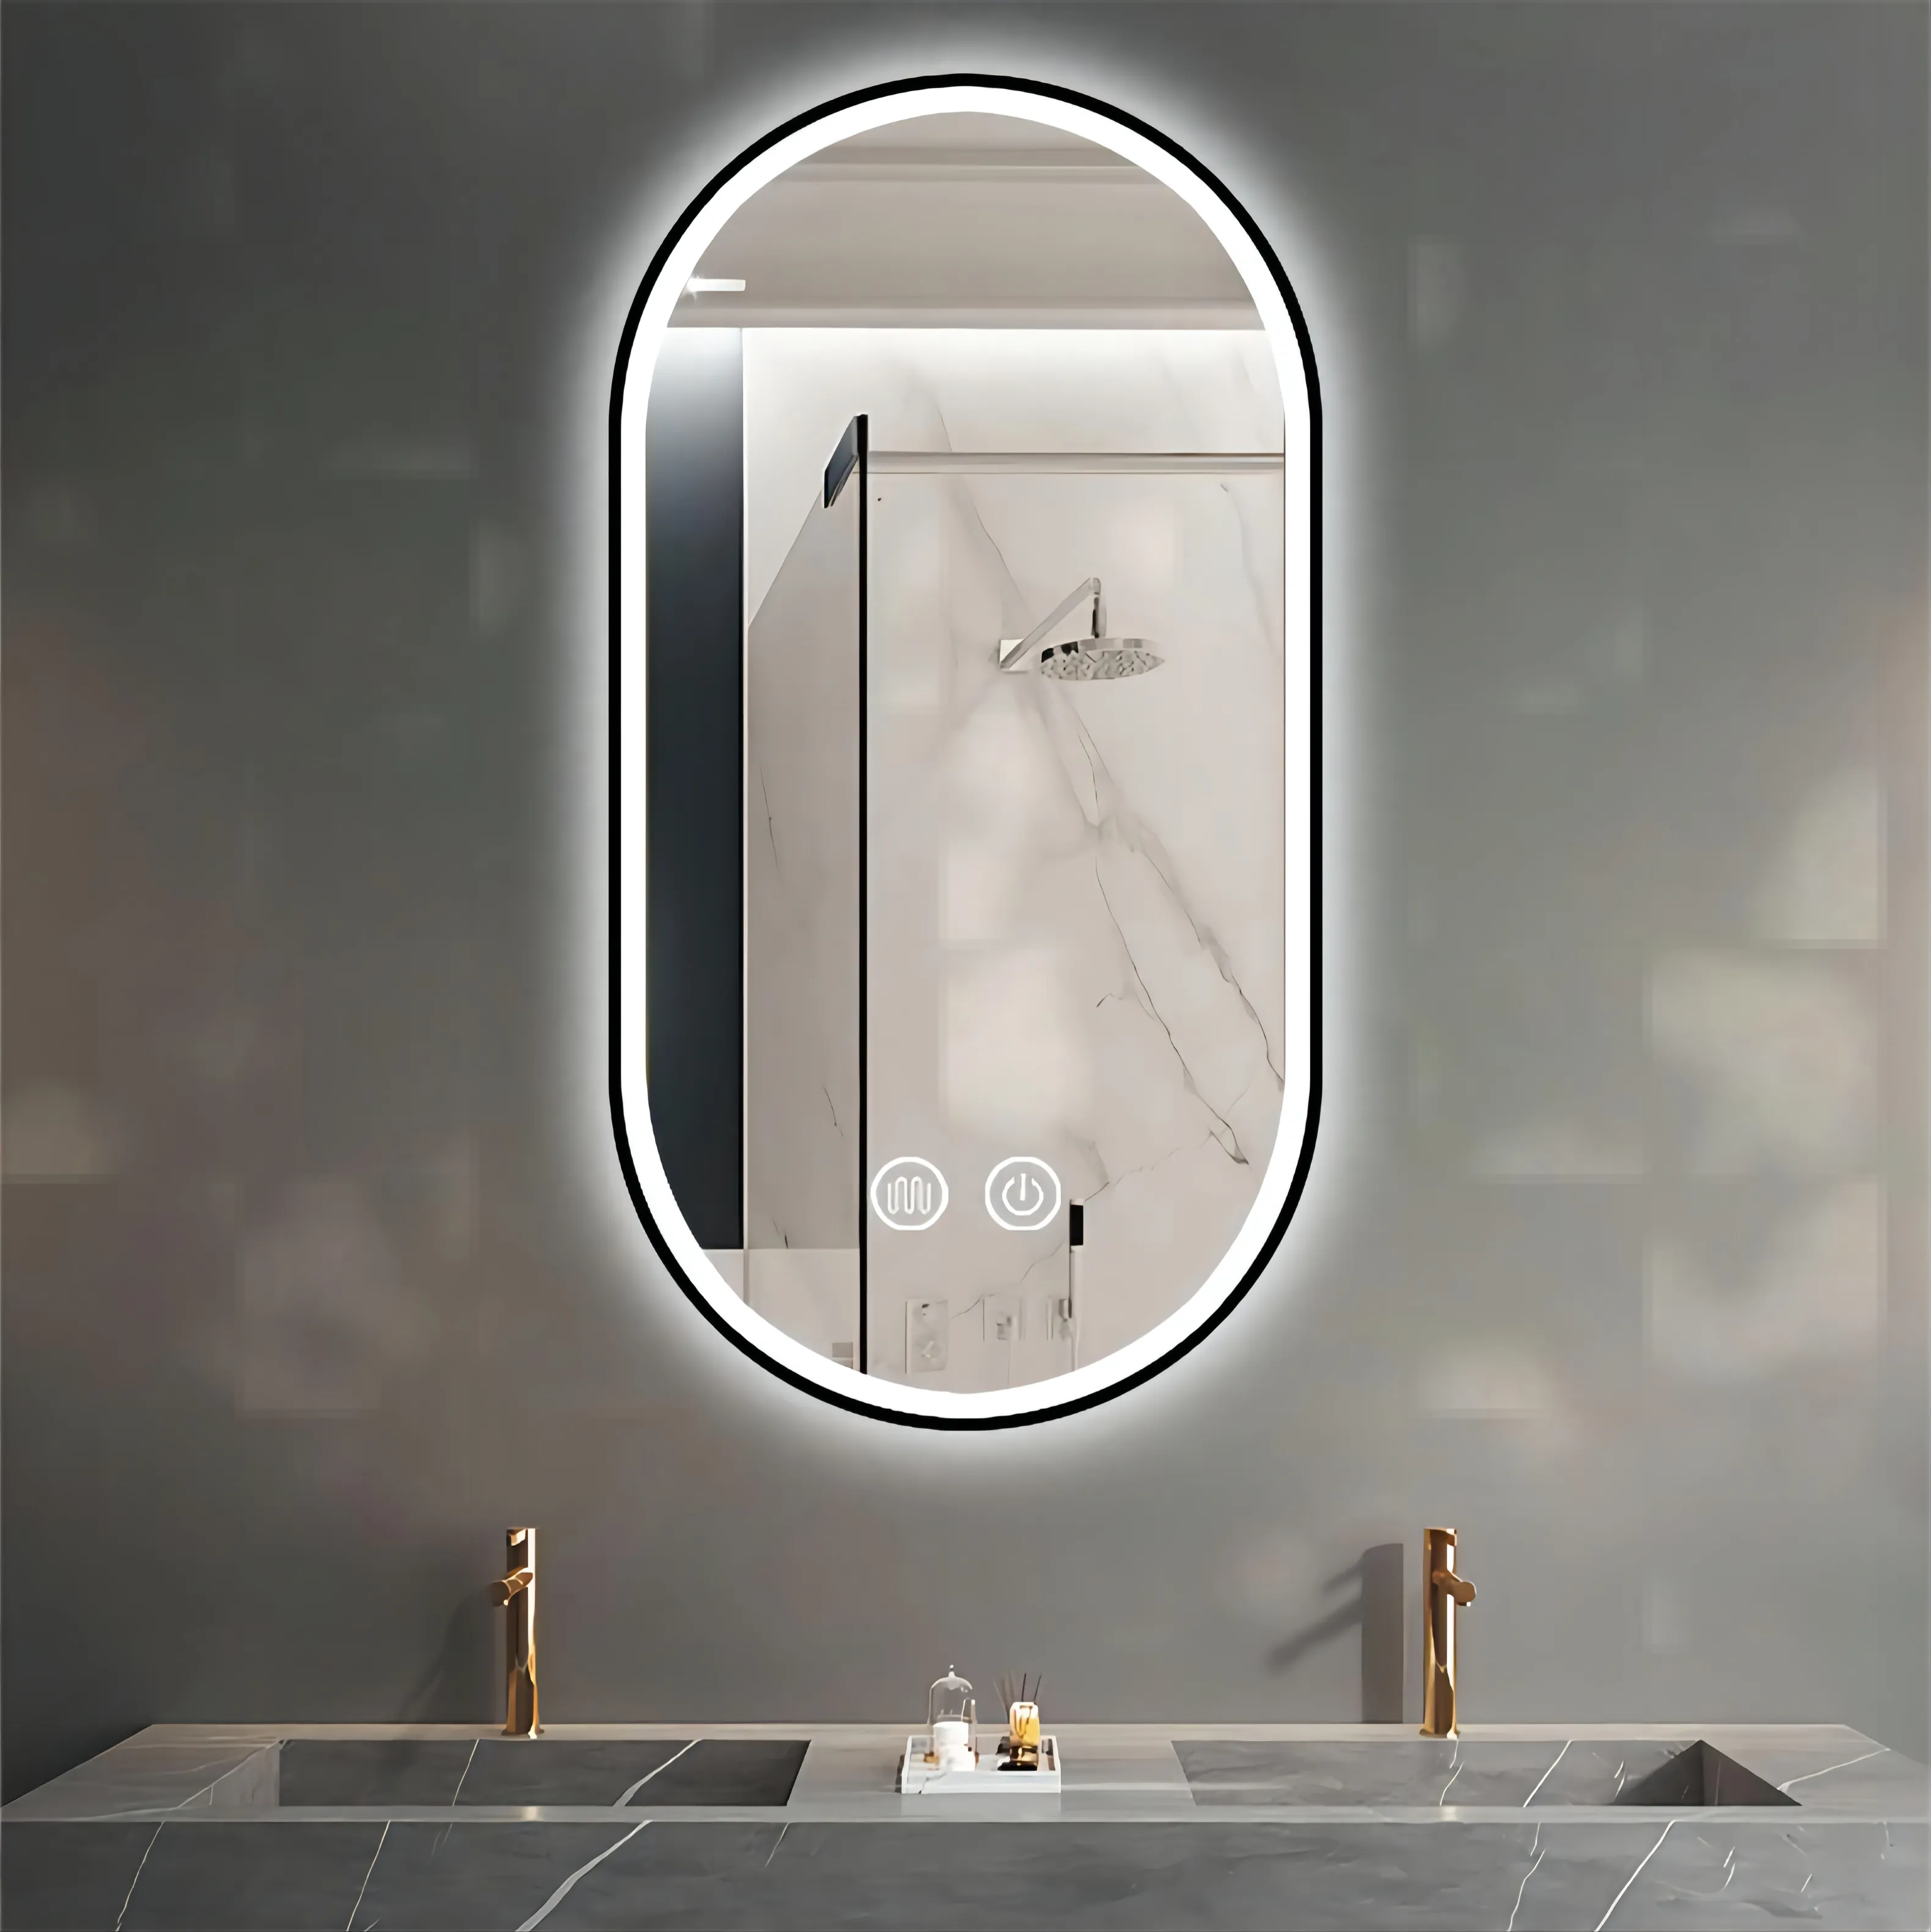 إضاءة ليد للبطارية مرآة حمام سبائك الألومنيوم إطار الفندقية مشروع الذكية المرآة البالونية مع بلوتوث